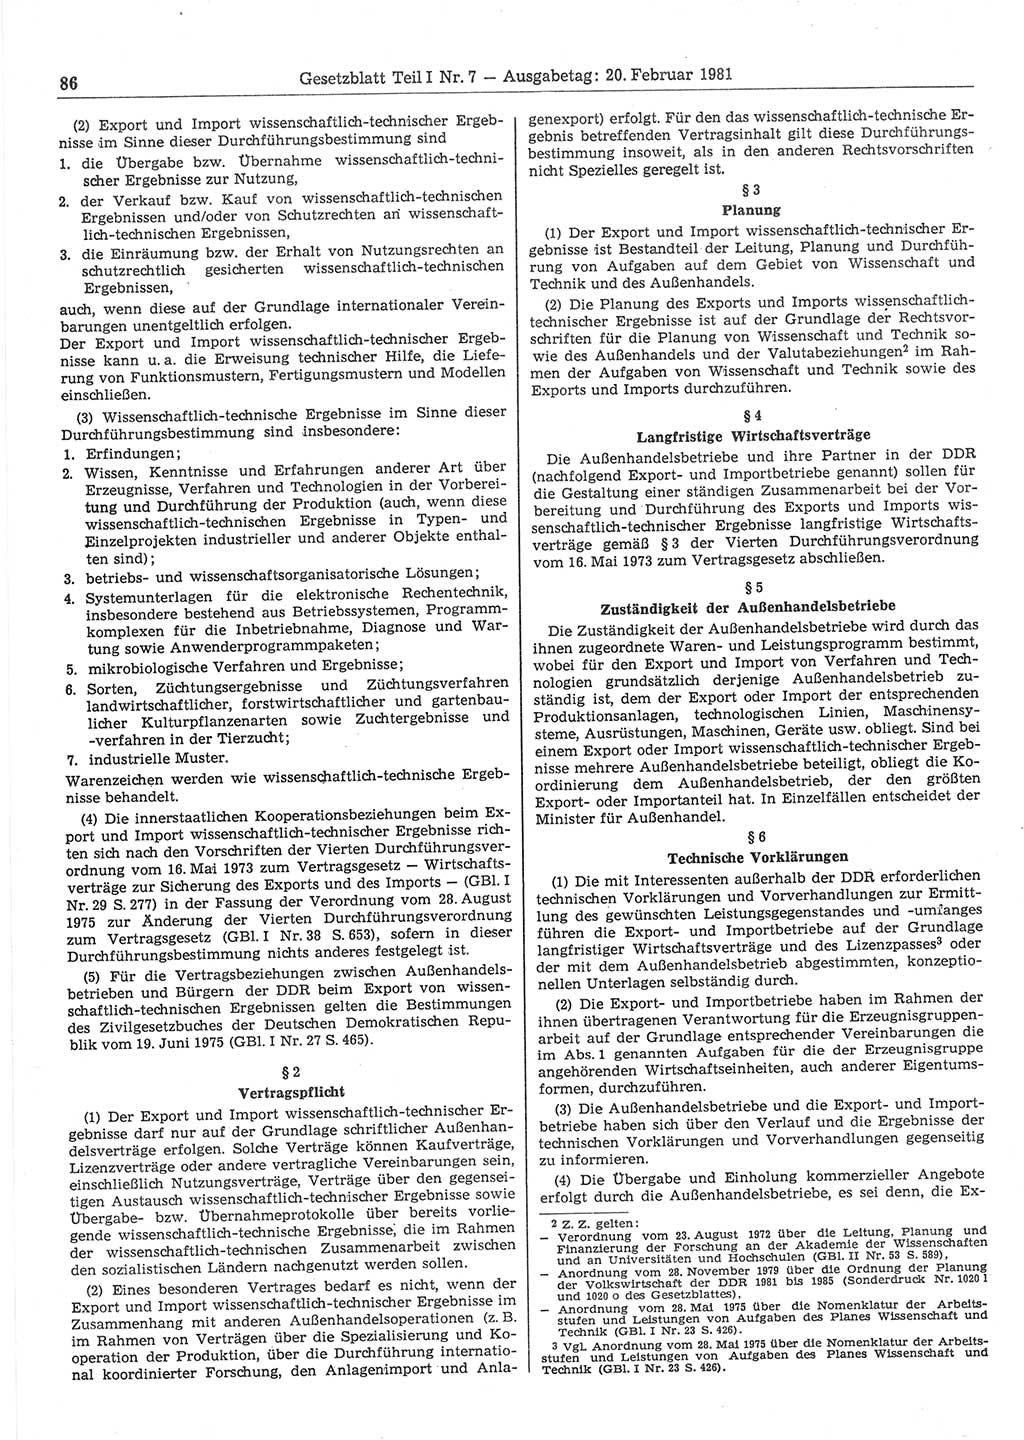 Gesetzblatt (GBl.) der Deutschen Demokratischen Republik (DDR) Teil Ⅰ 1981, Seite 86 (GBl. DDR Ⅰ 1981, S. 86)